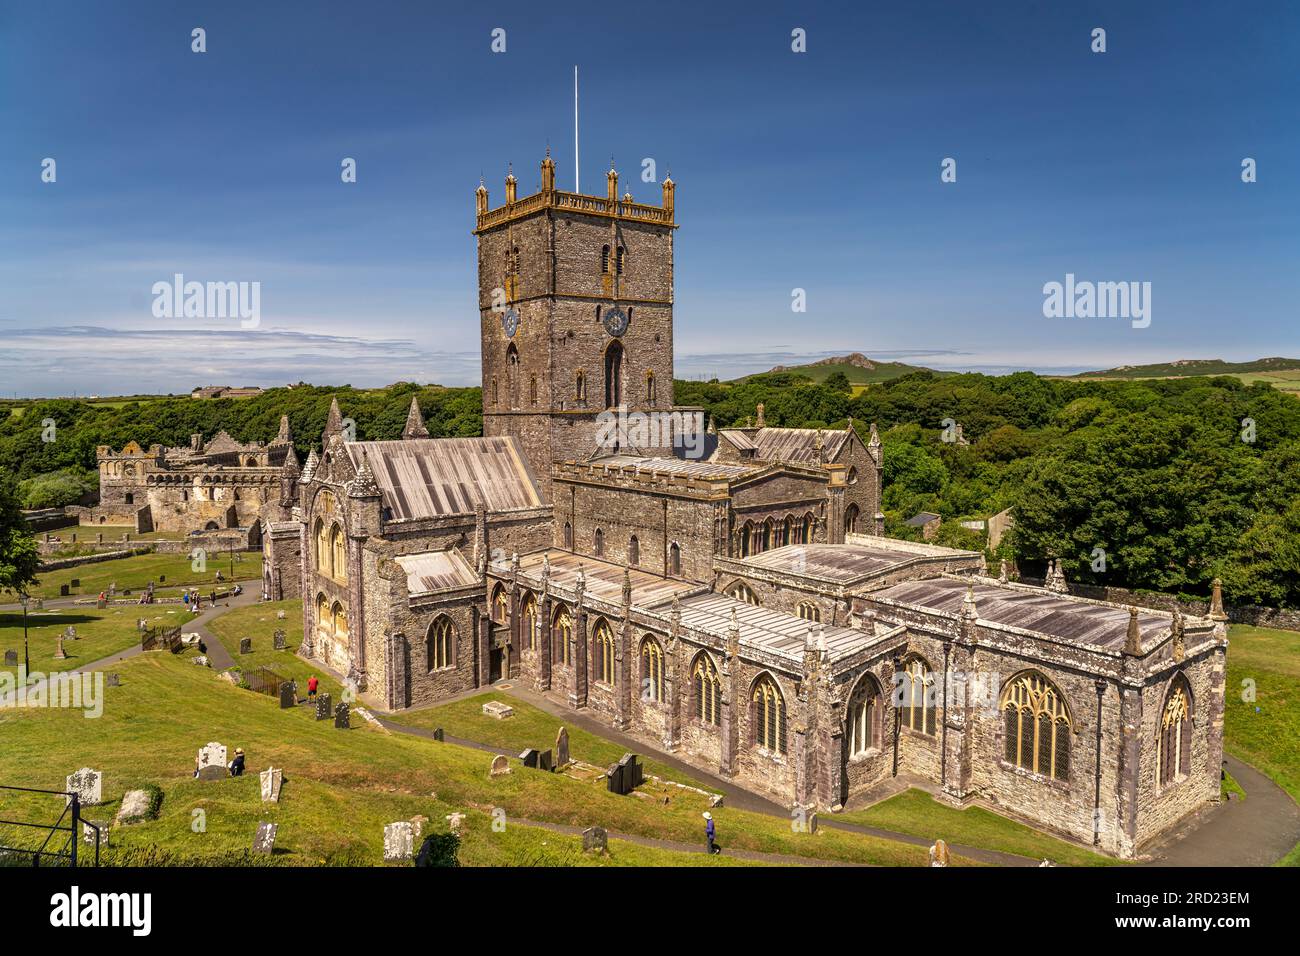 Kathedrale von St Davids, pays de Galles, Großbritannien, Europa | Cathédrale St Davids, pays de Galles, Royaume-Uni de Grande-Bretagne, Europe Banque D'Images